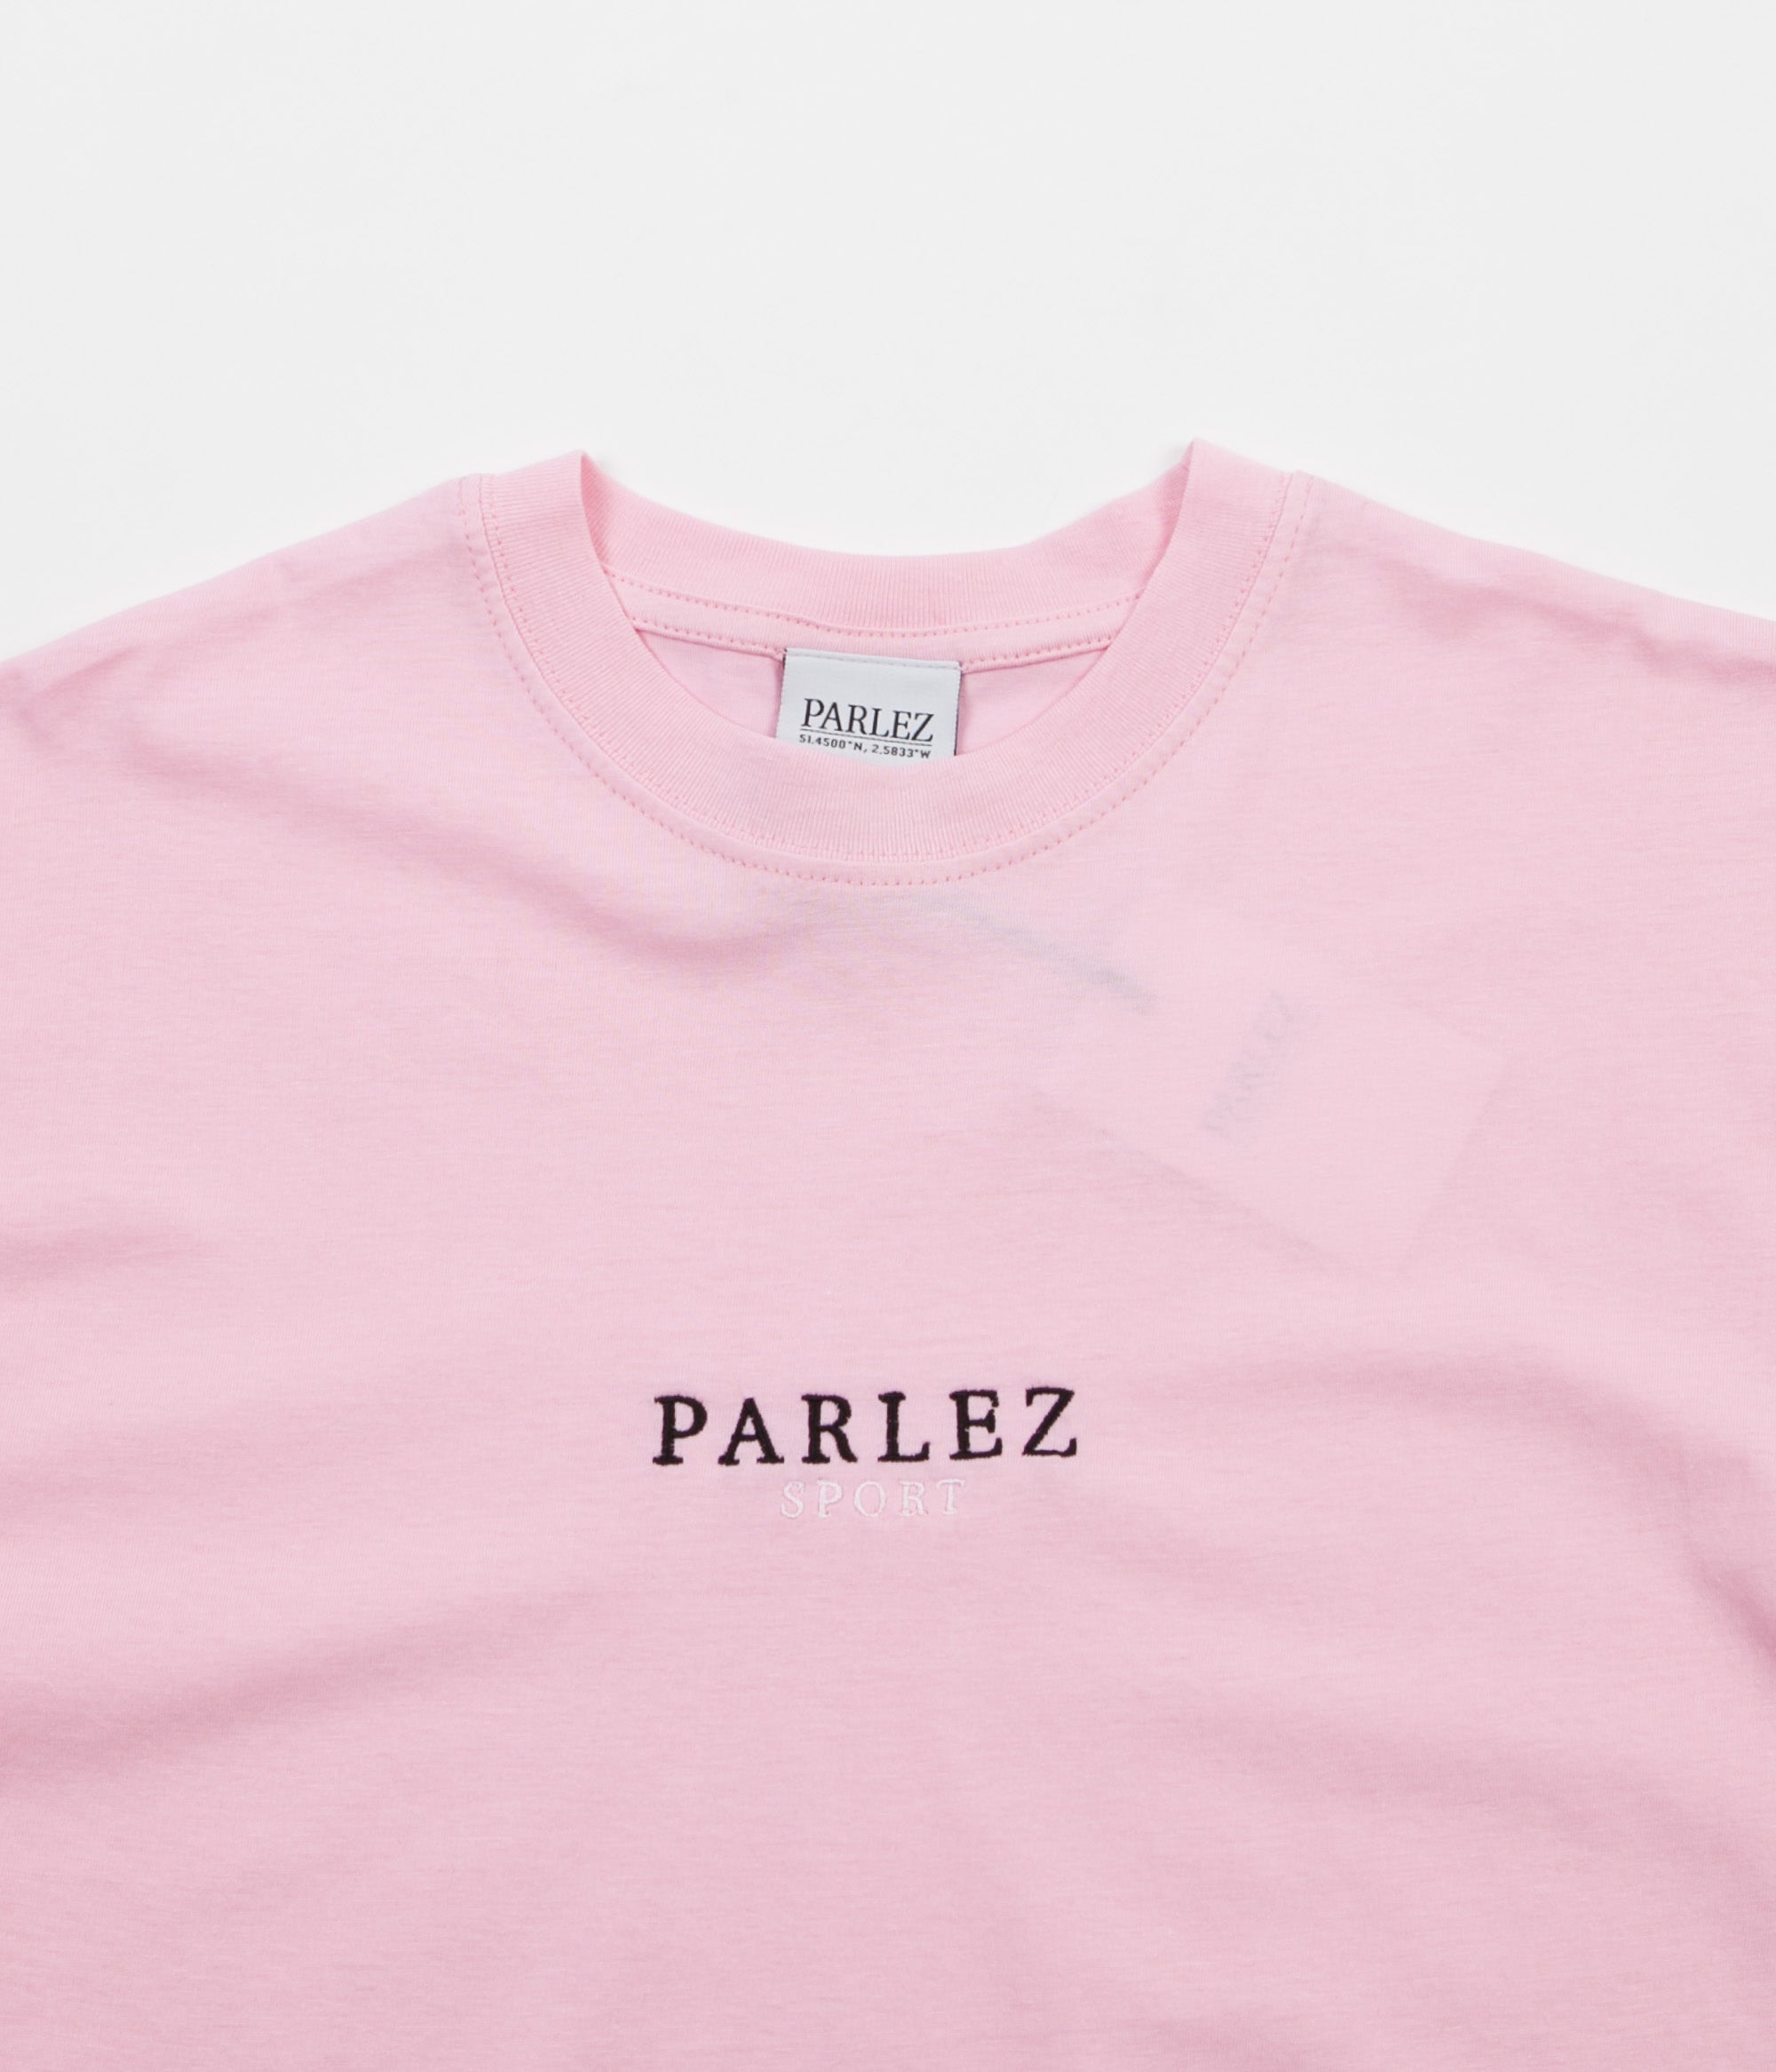 Parlez Sport T-Shirt - Pink | Flatspot